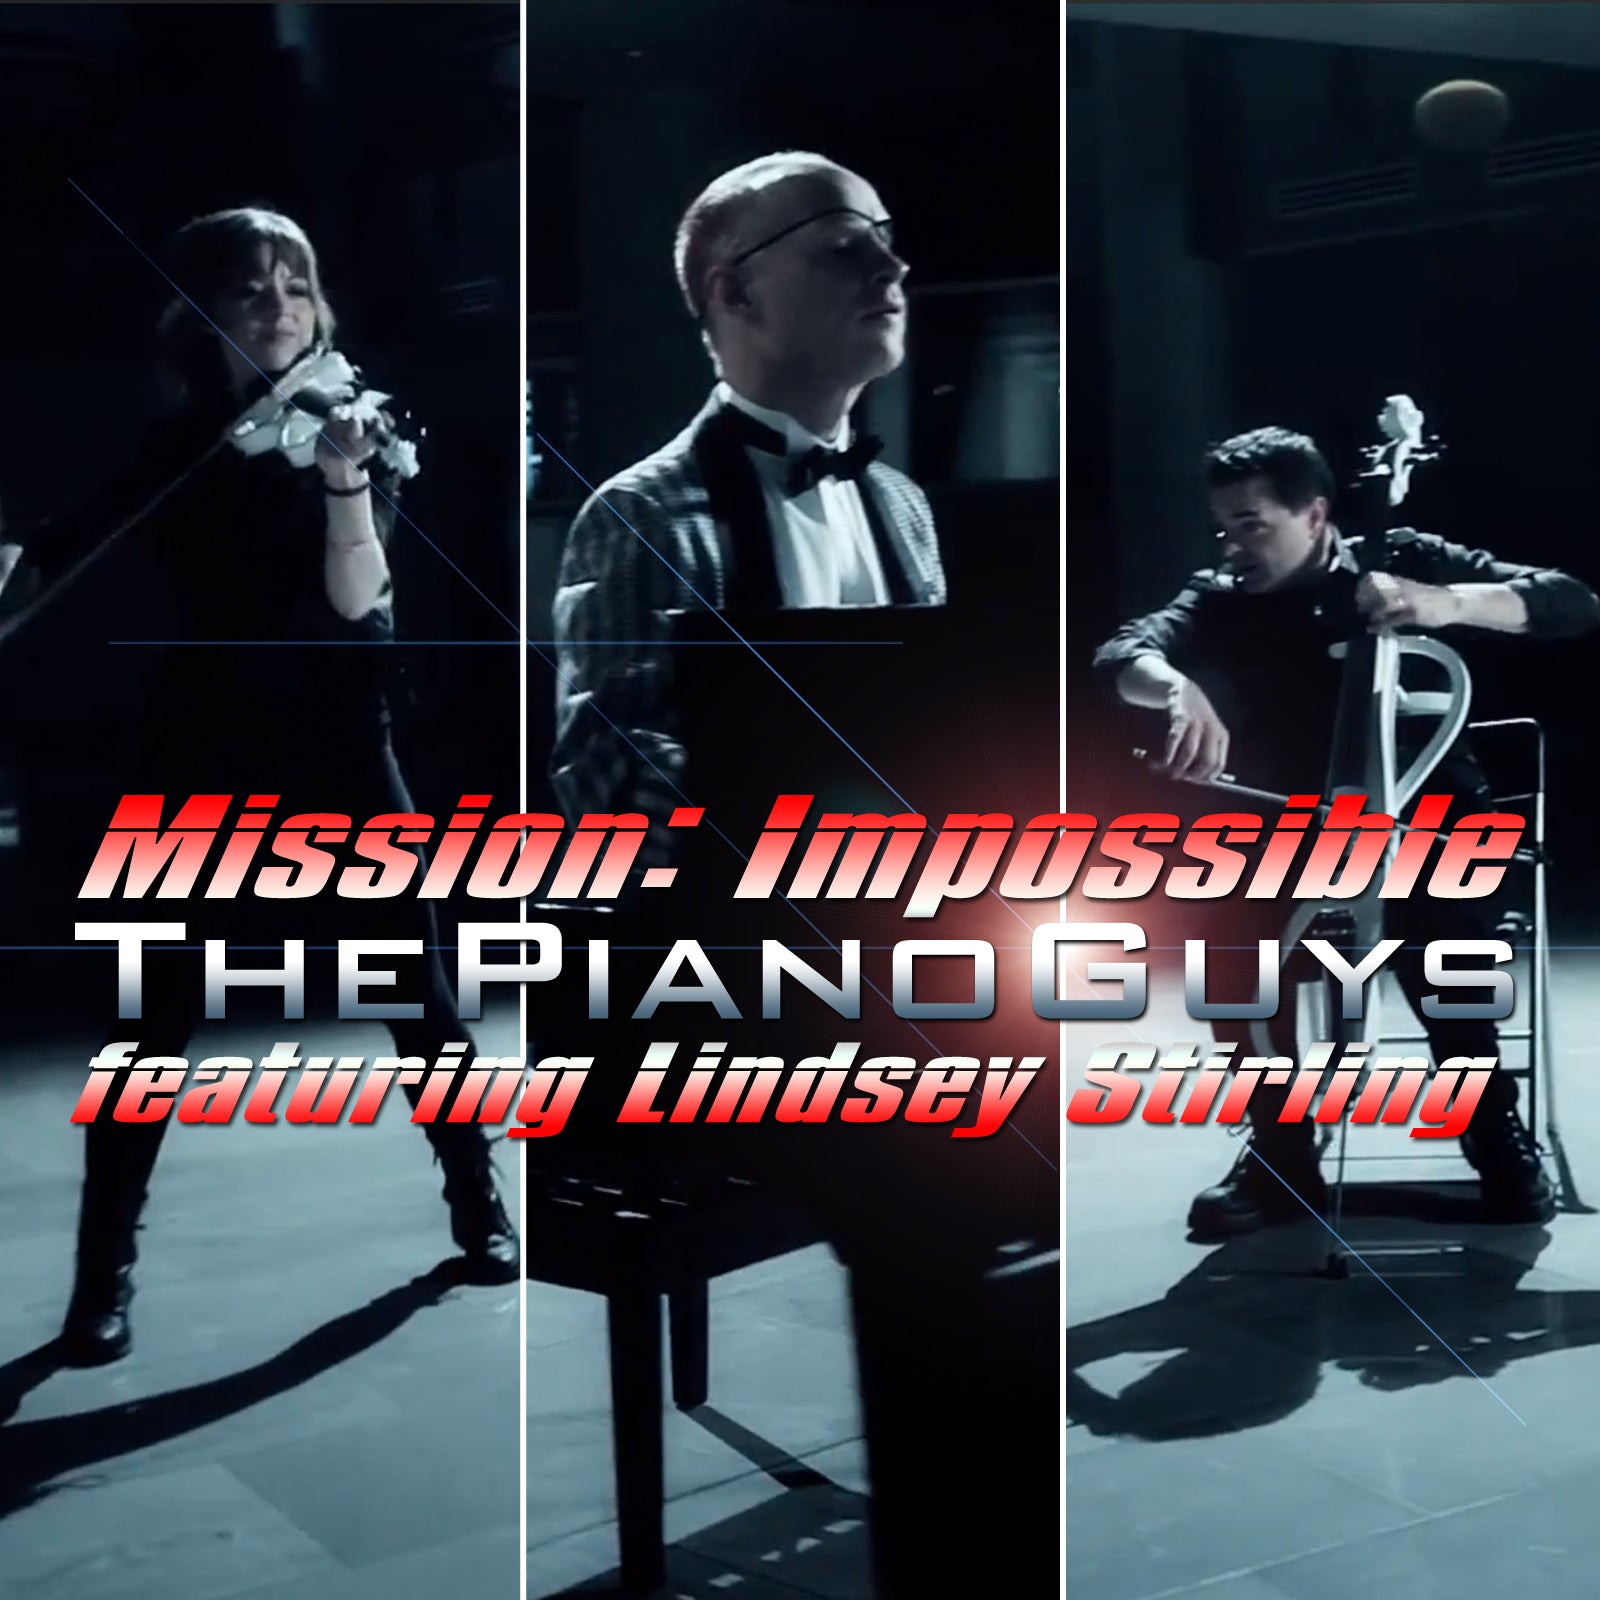 Миссия невыполнима мелодия. The Piano guys. Миссия невыполнима на пианино. Mission Impossible Piano. The Piano guys Mission Impossible Ноты.